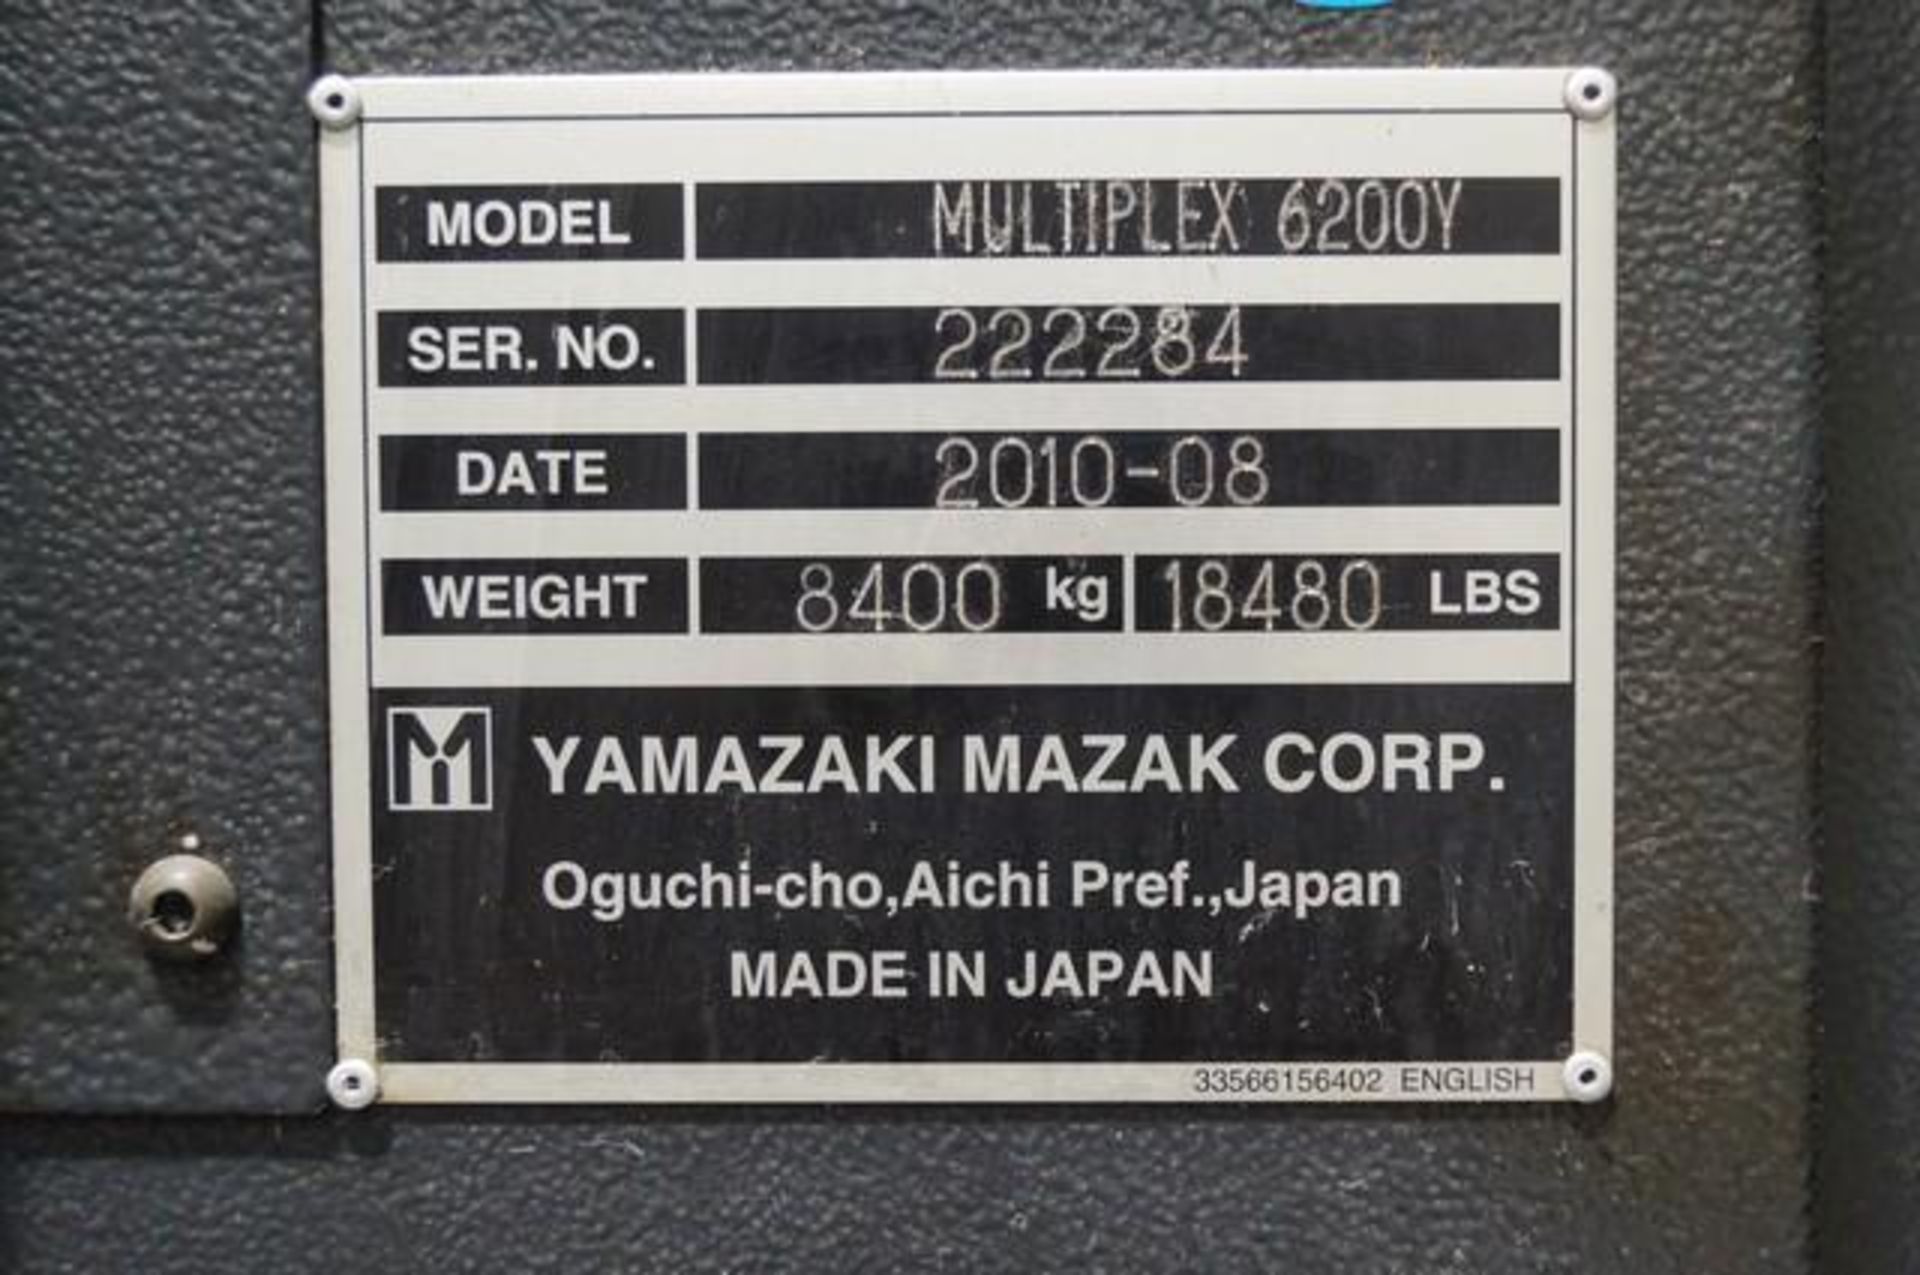 2010 MAZAK MULTIPLEX 6200Y Horizontal Turning Center - Image 10 of 10